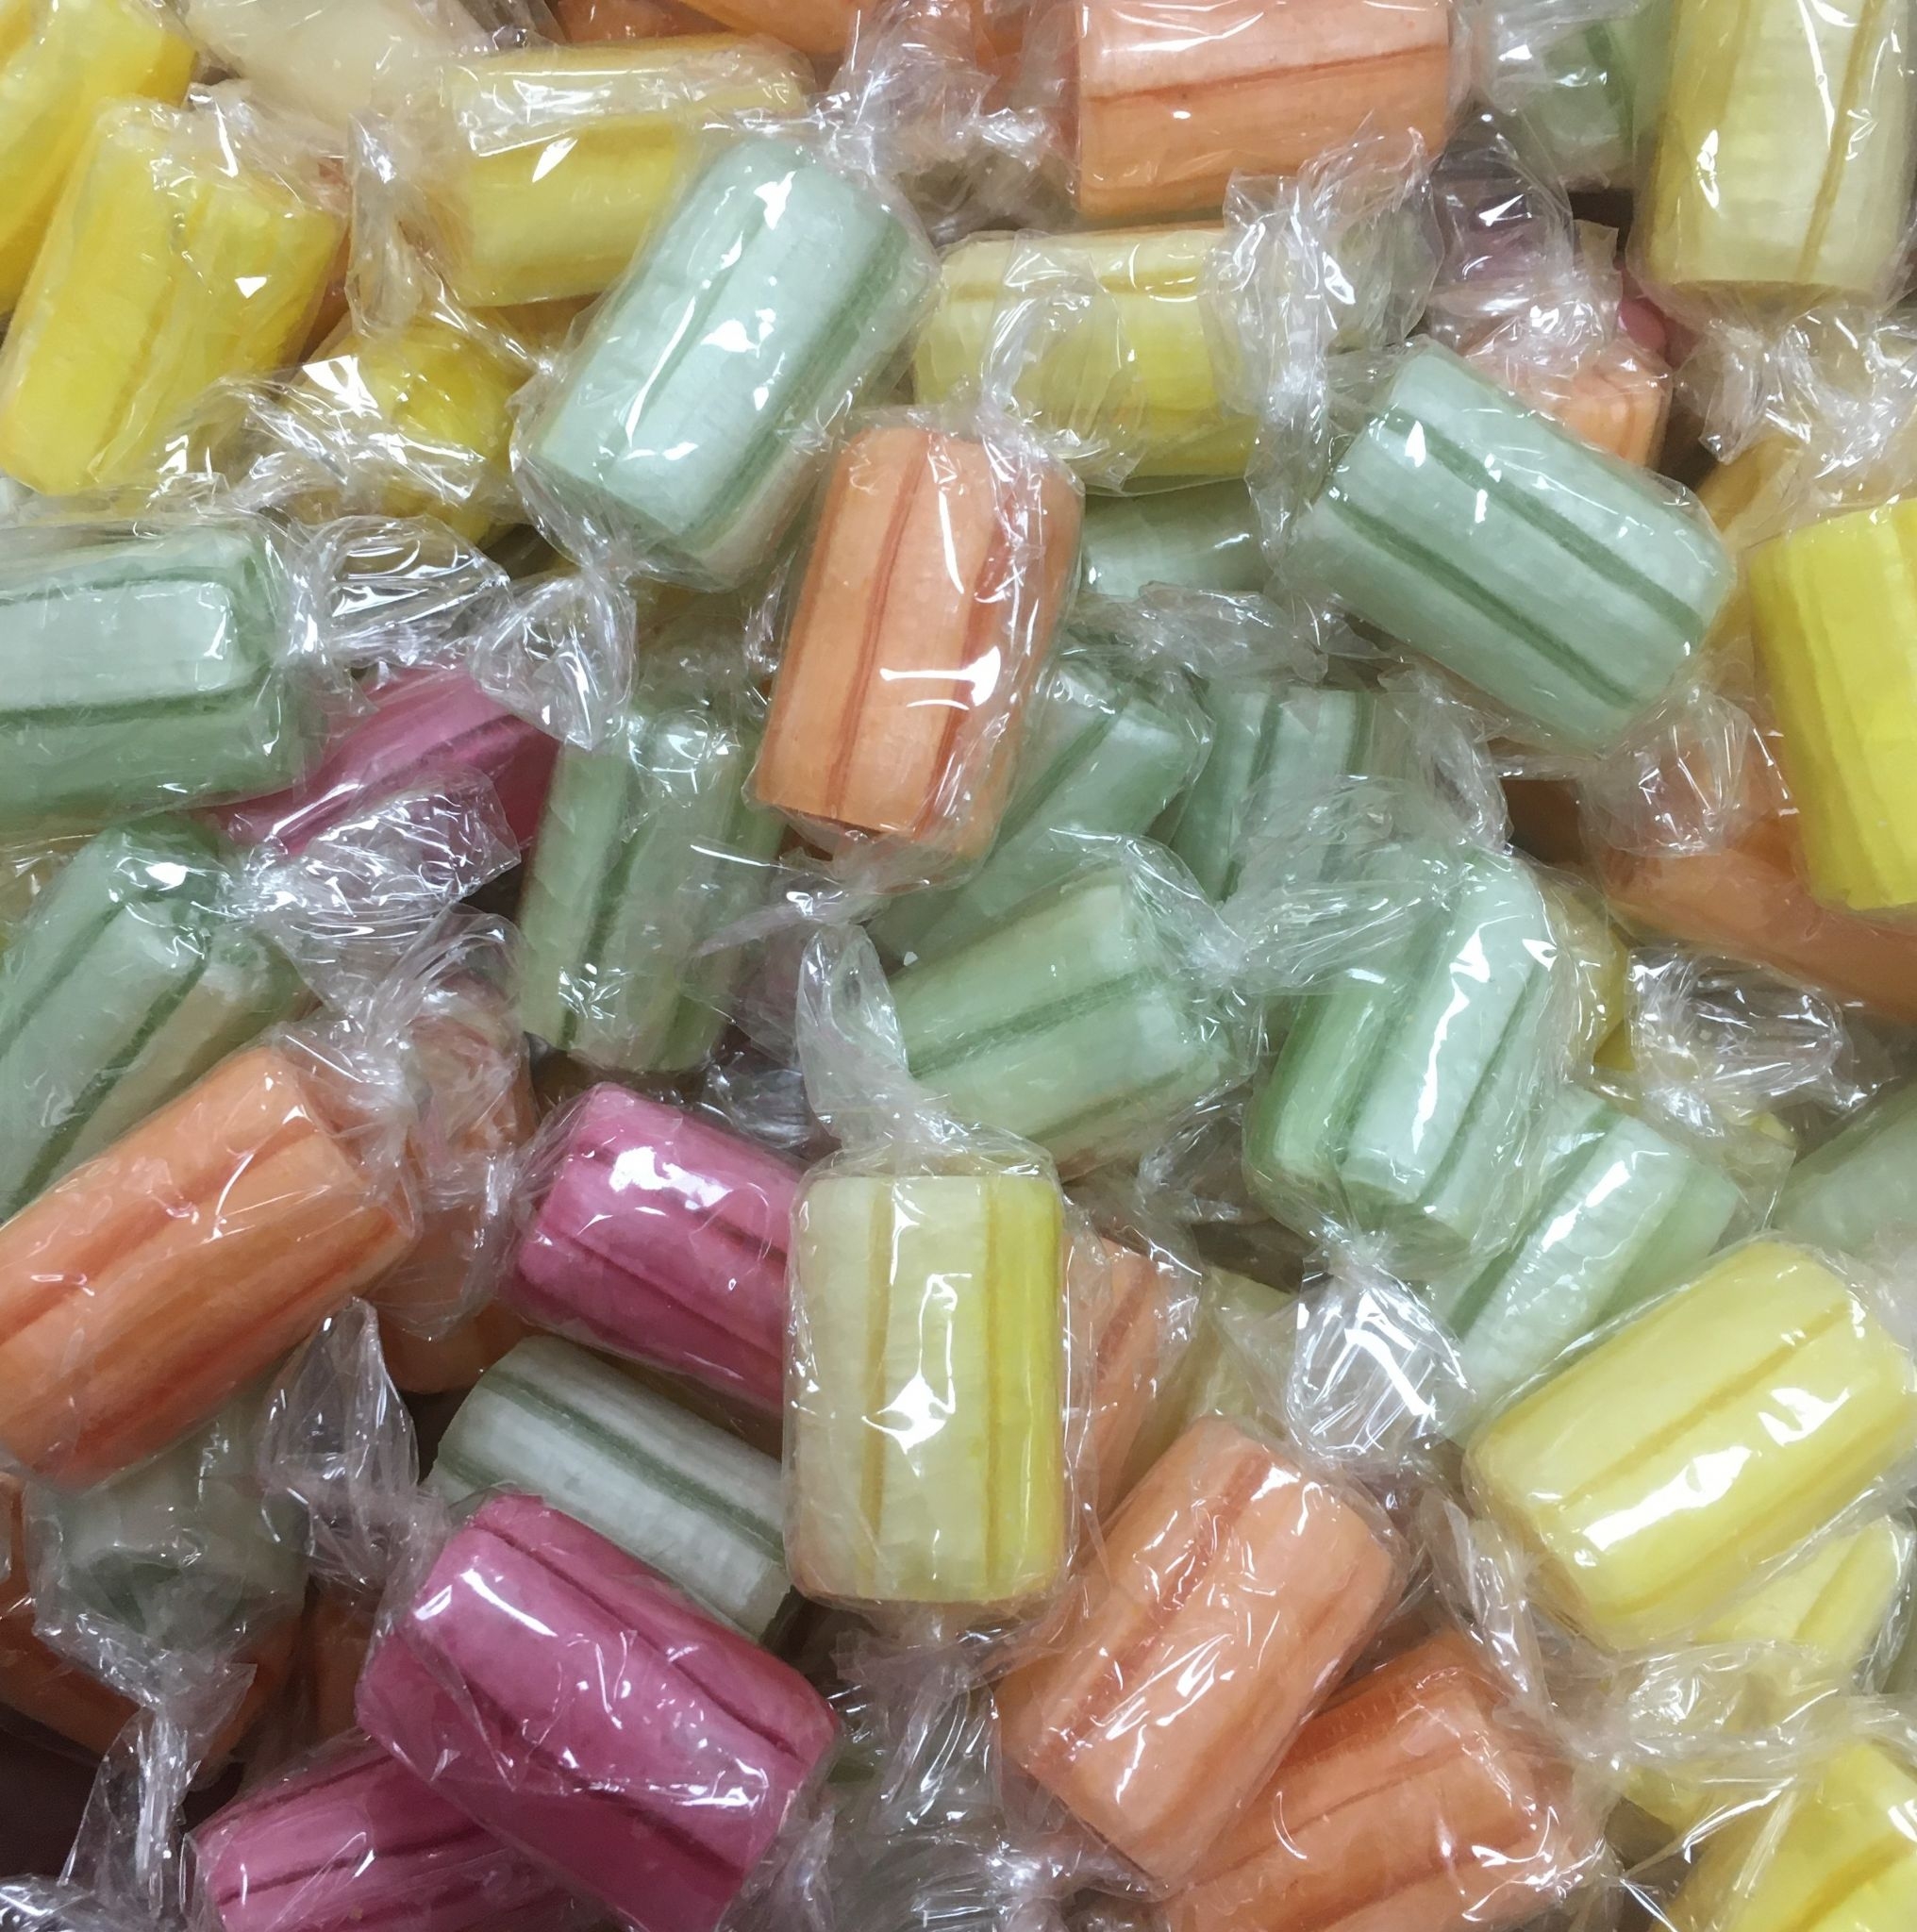 Edwardian Fruit Rock Sweets 100g – Bag 100g – Confection Affection